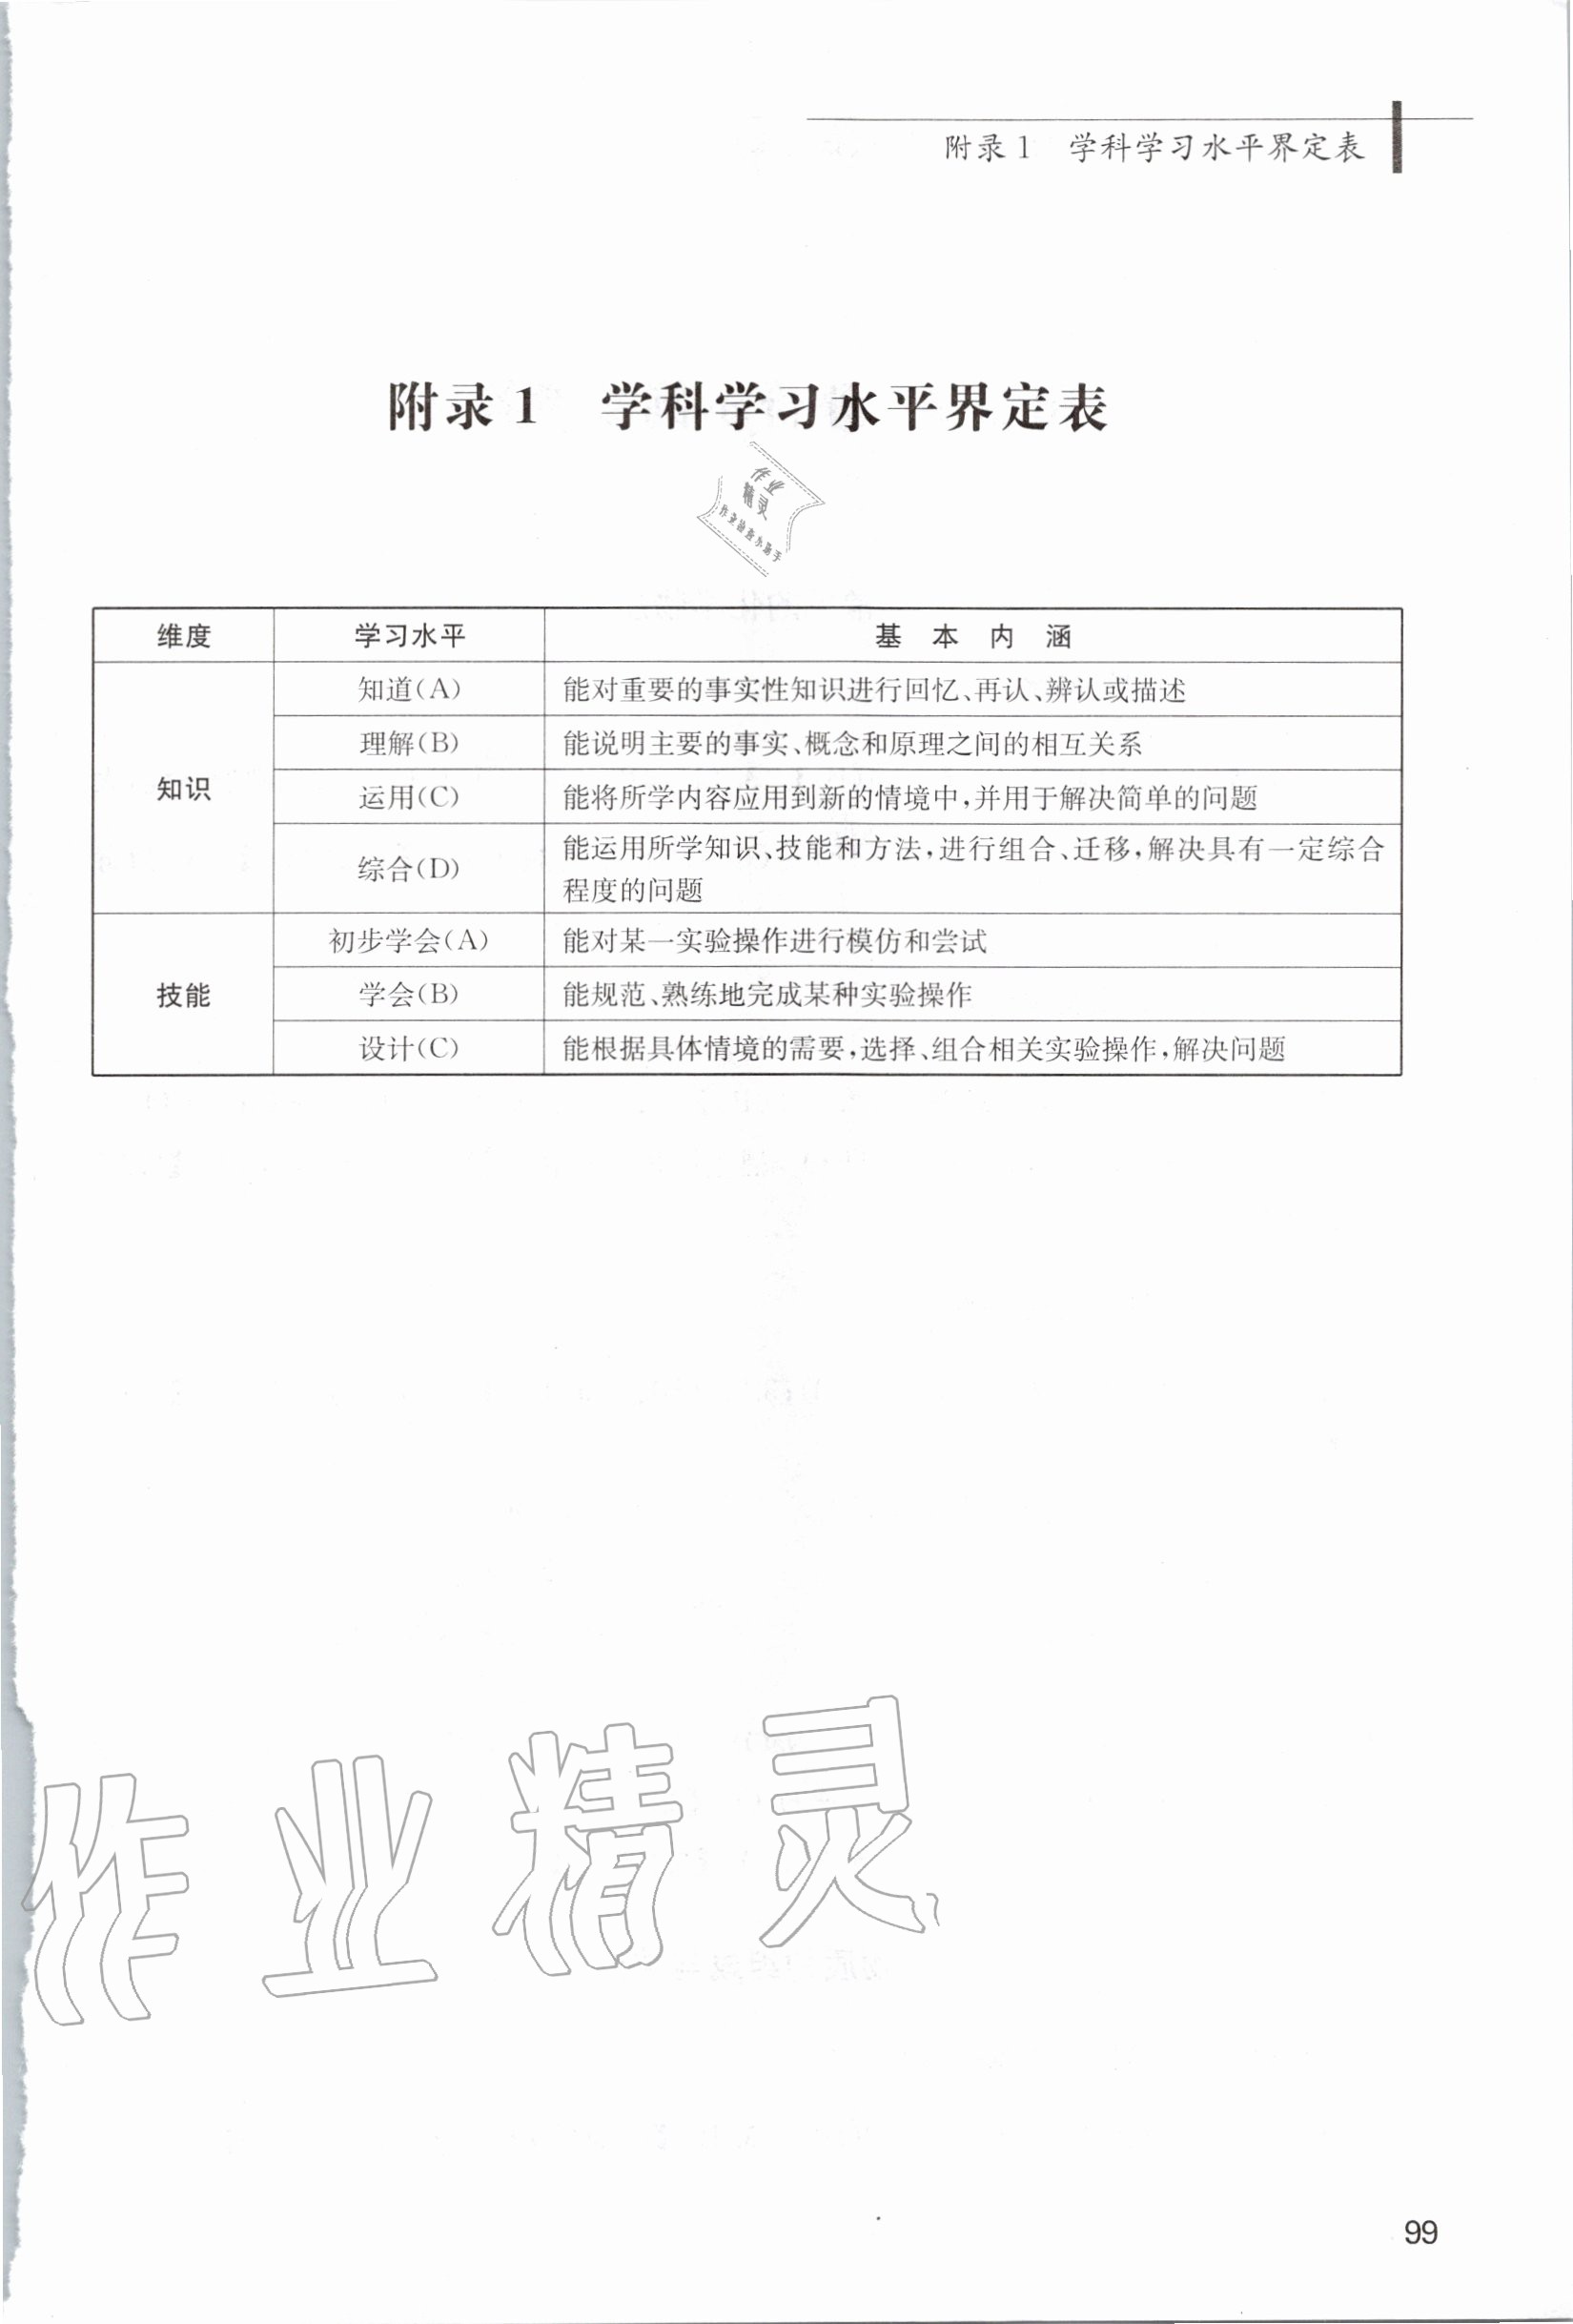 2020年上海市初中化学学科教学基本要求 第1页